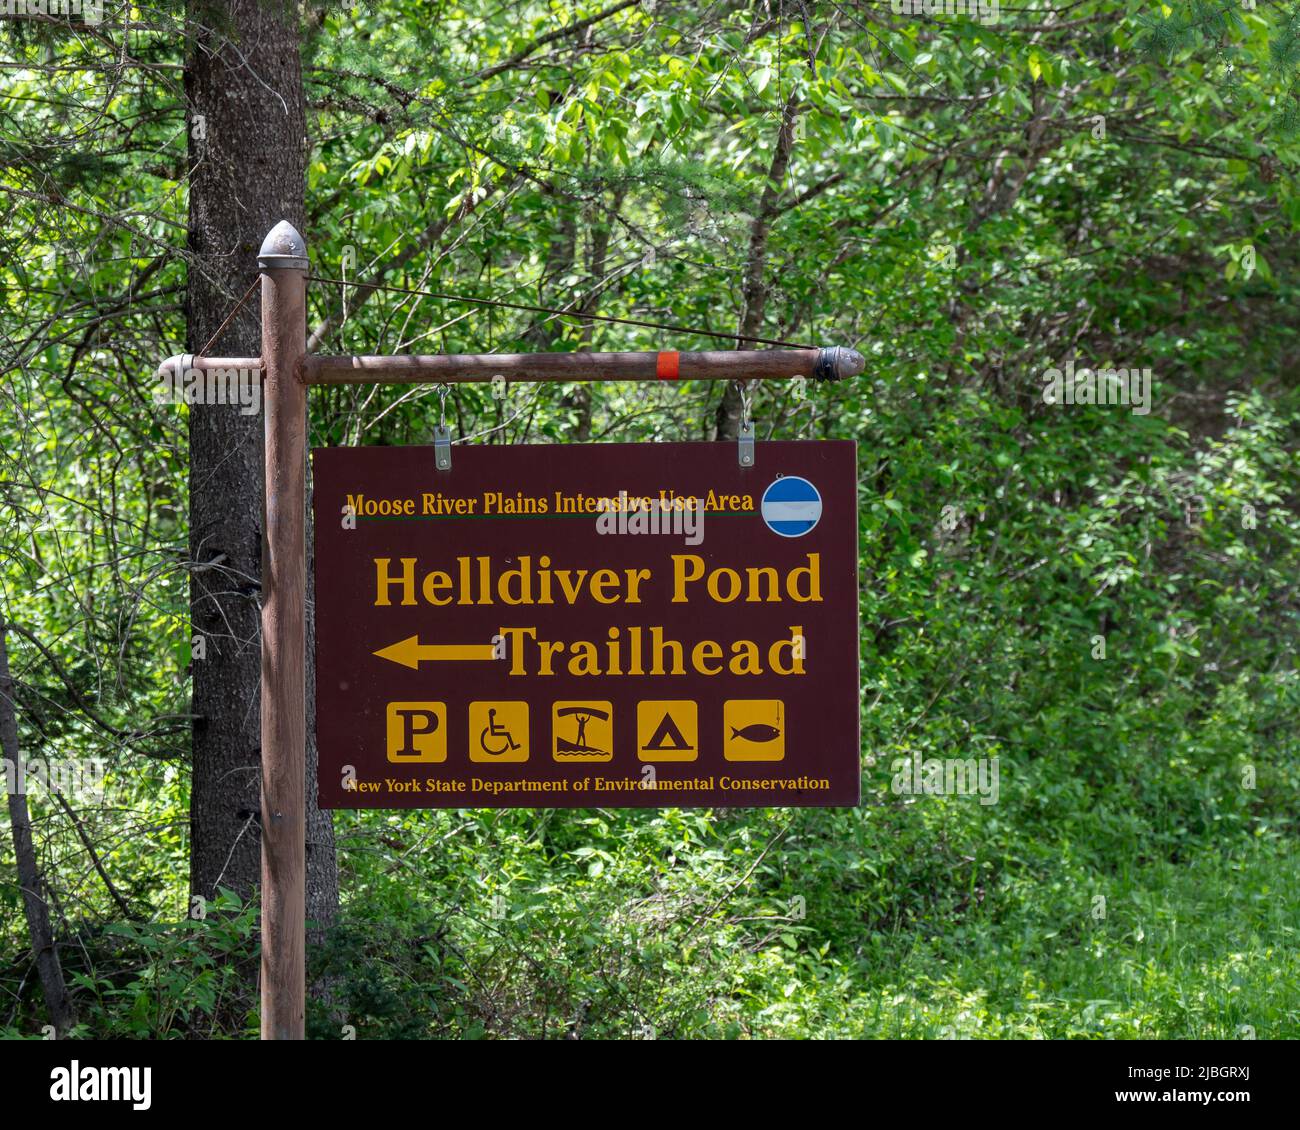 Schild für den Trailhead Trail zum Helldiver Pond in den Moose River Plains in den Adirondack Mountains, NY USA Stockfoto